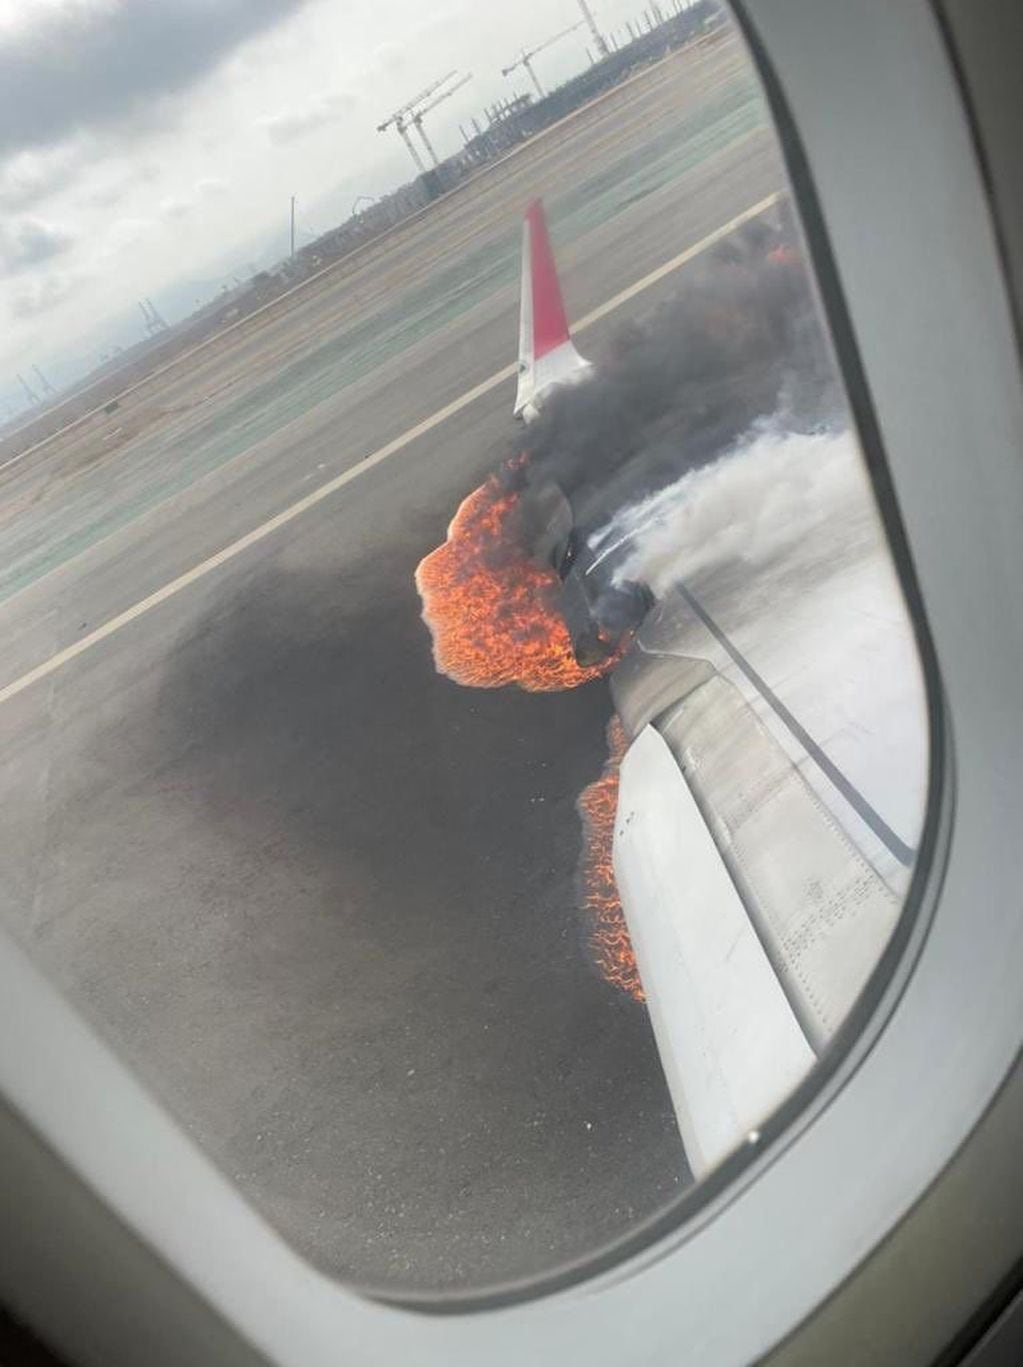 Los pasajeros compartieron imágenes del accidente.